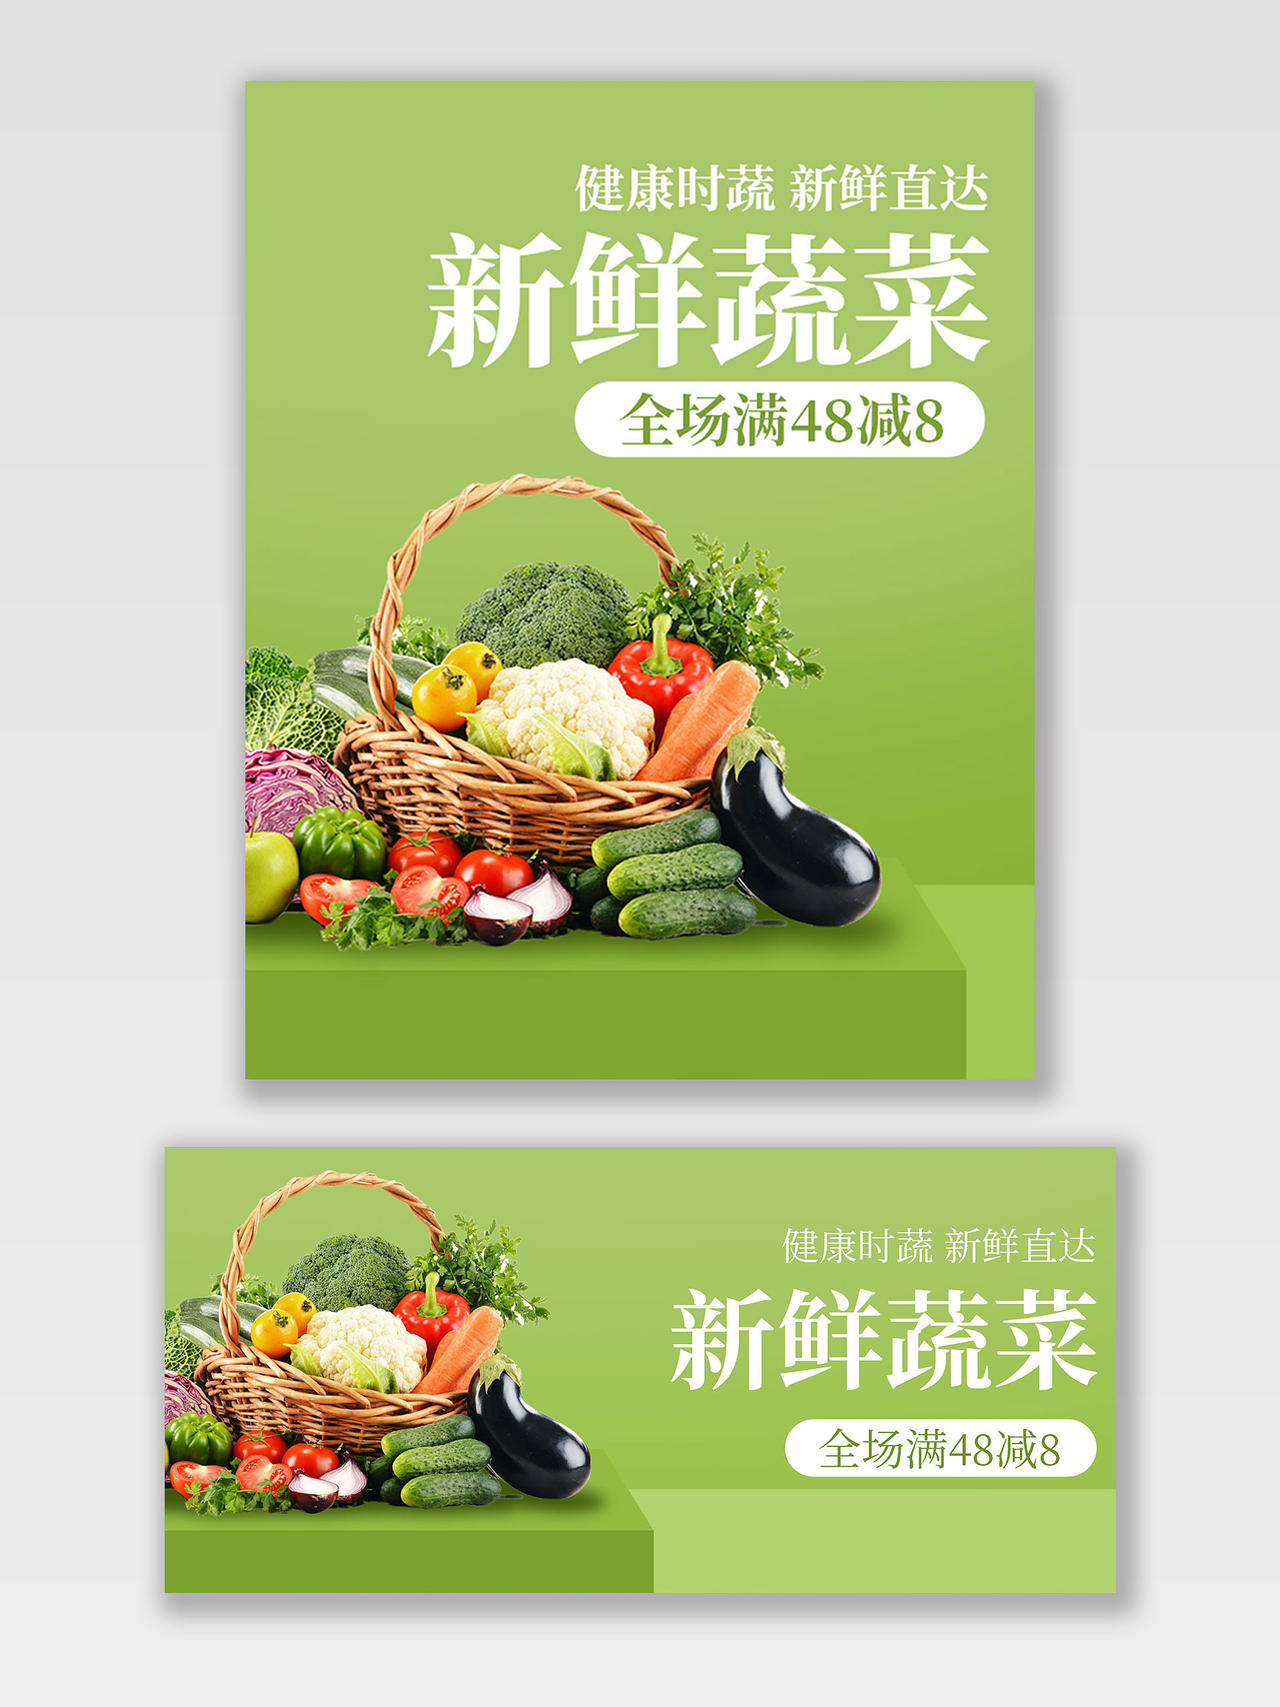 绿色简约水果生鲜蔬菜淘宝节海报banner生鲜配送海报banner